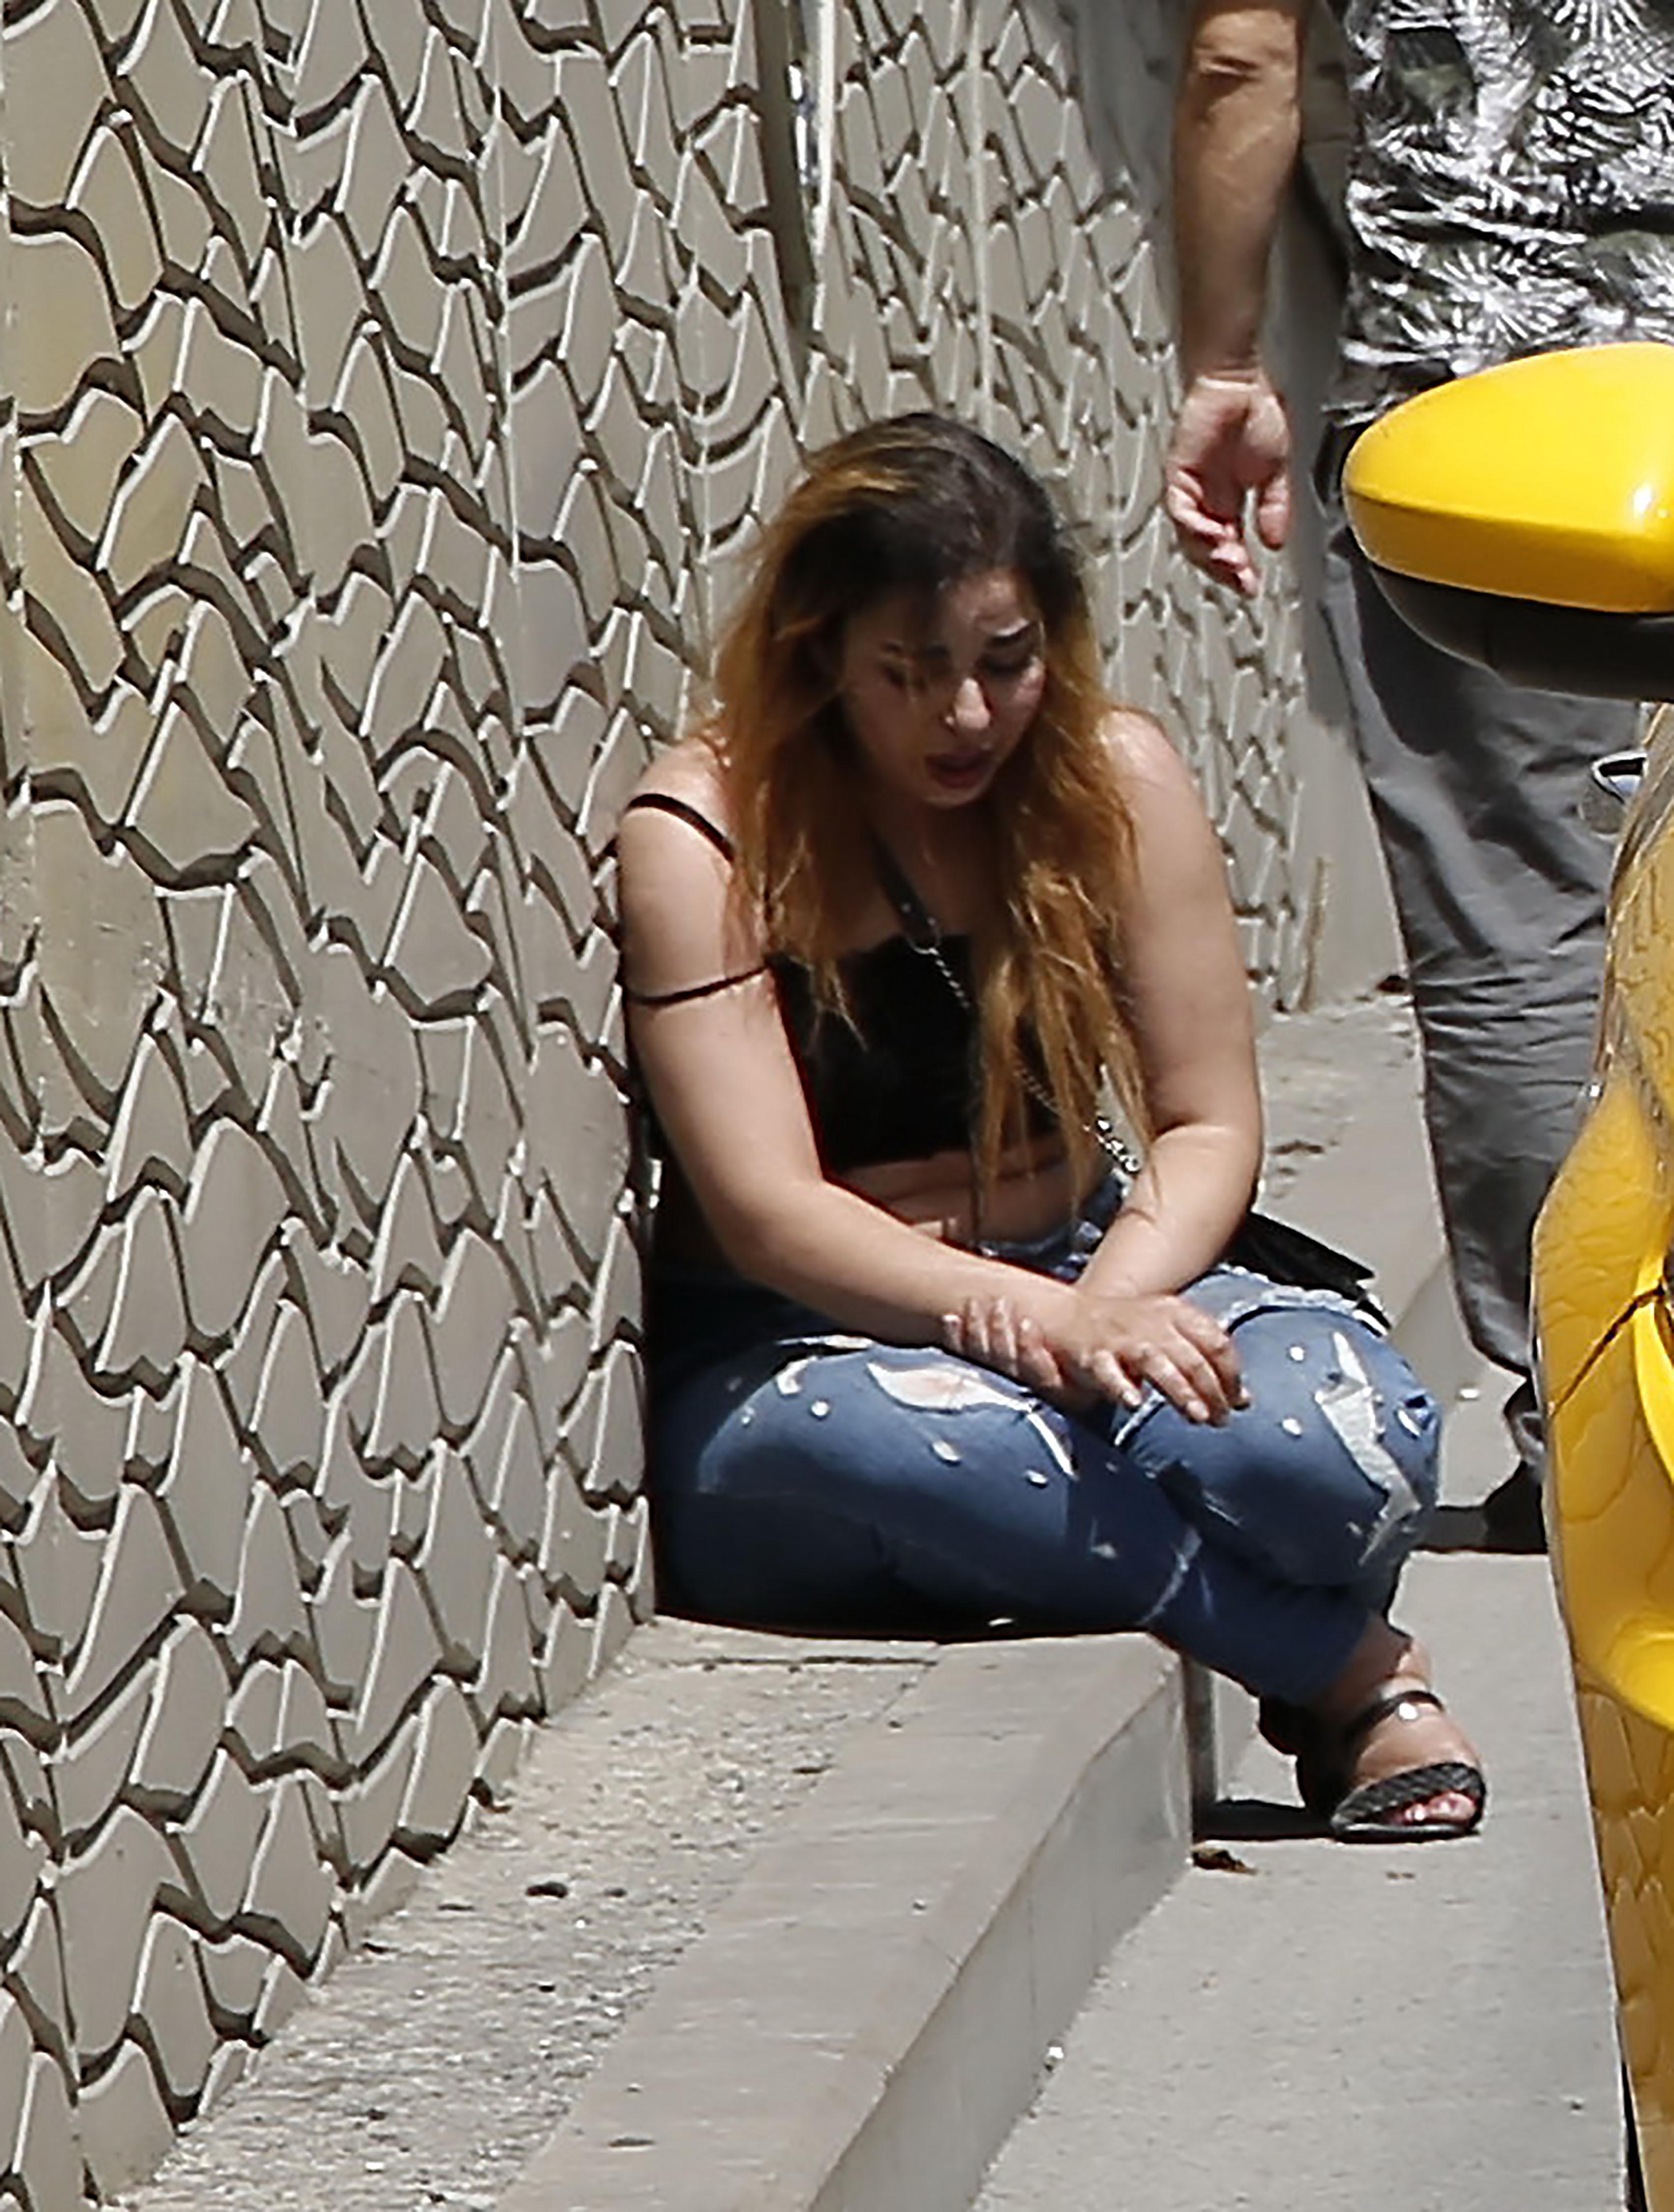 Taksimde genç kadın sinir krizi geçirirken erkek arkadaşı kaçtı